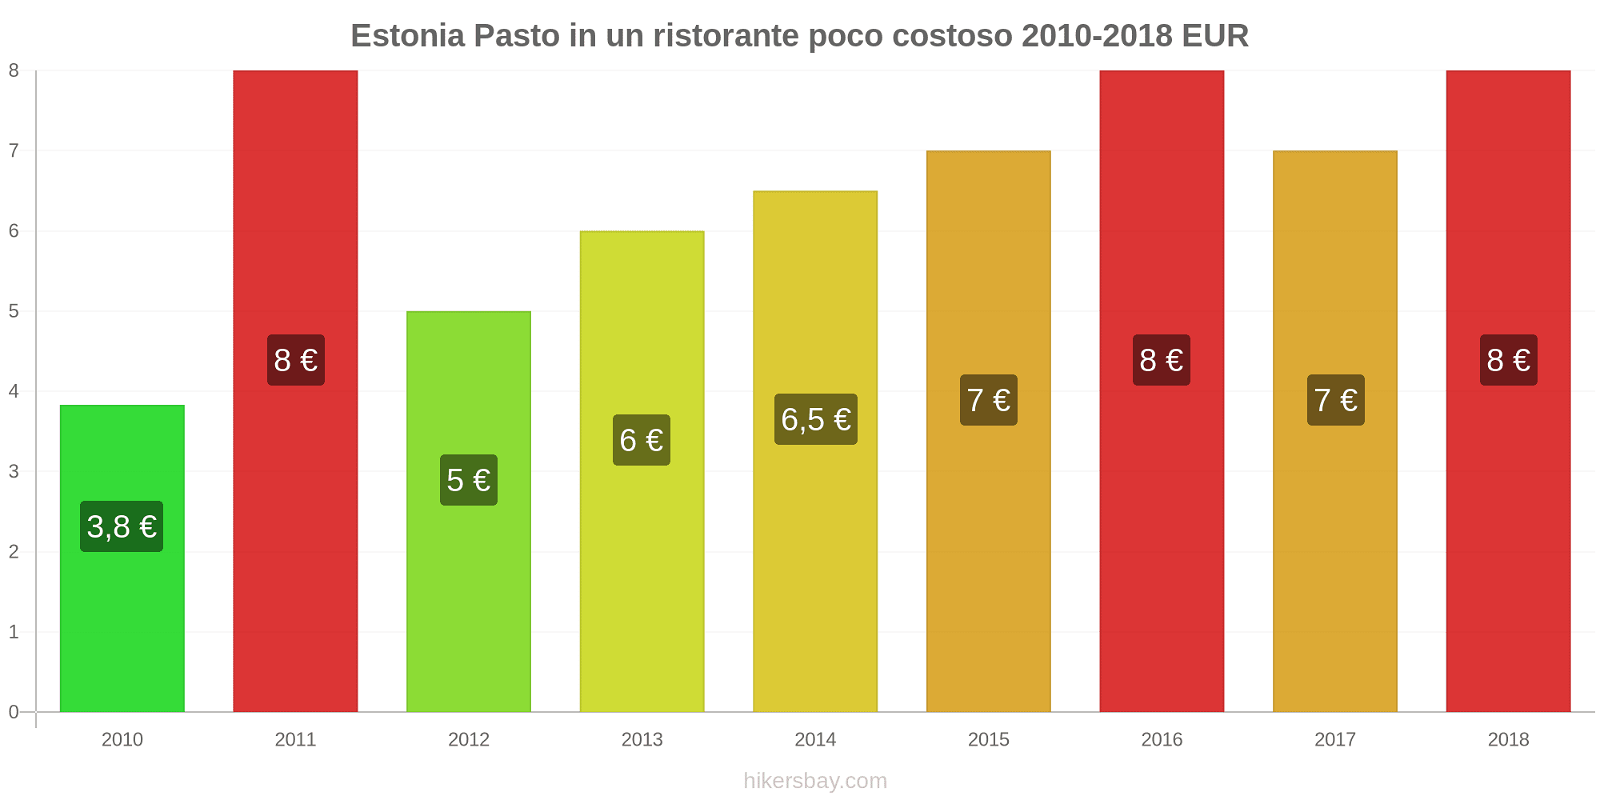 Estonia cambi di prezzo Pasto in un ristorante economico hikersbay.com